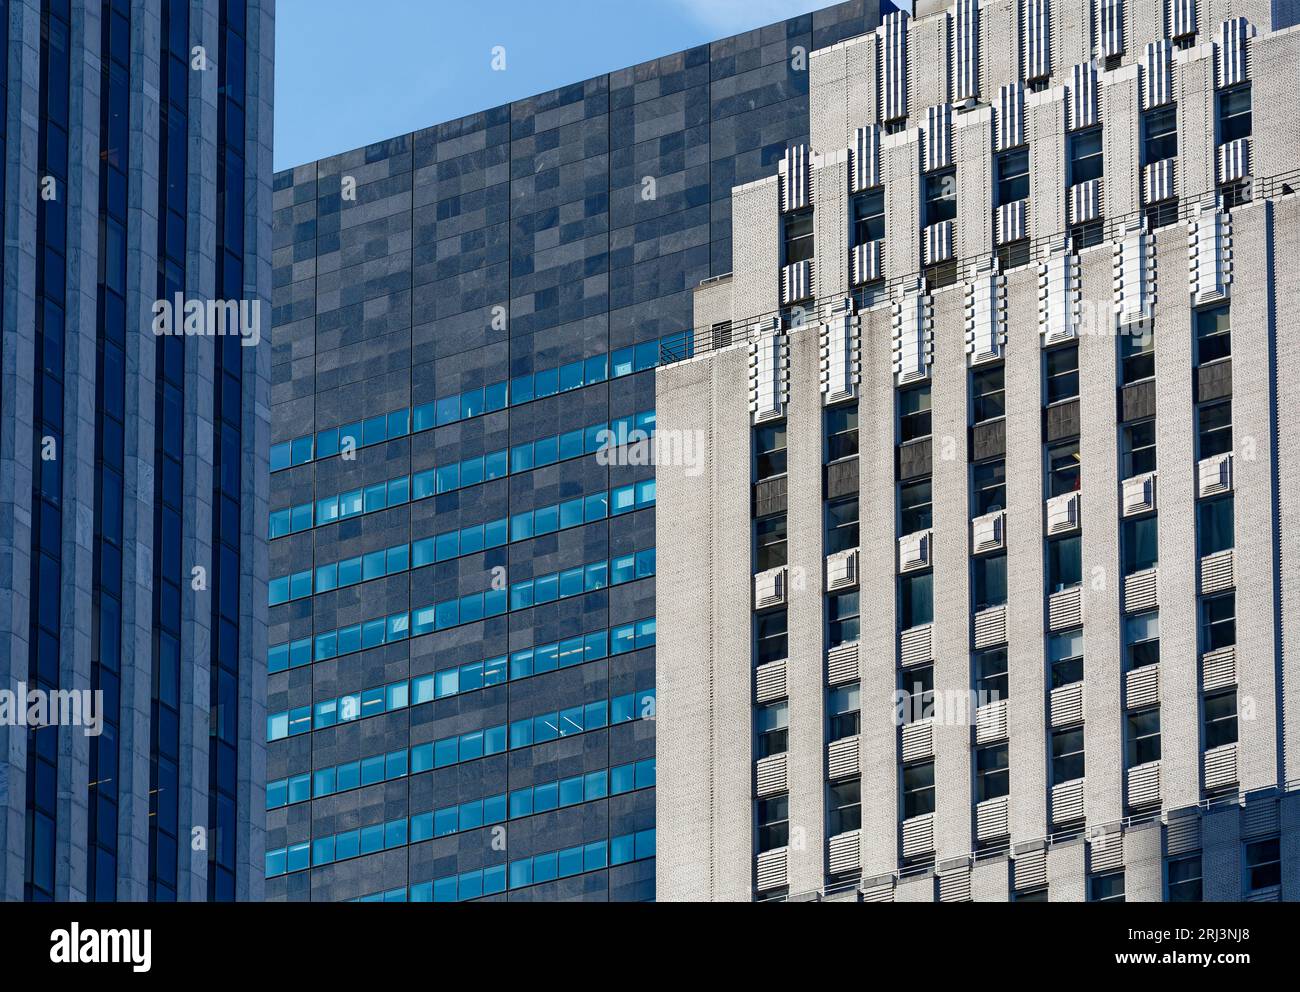 Die Fensterbänder brechen die schwarz-graue Granitfassade des IBM-Gebäudes auf, das vom General Motors Building und der Fifth Avenue 745 eingerahmt wird. Stockfoto